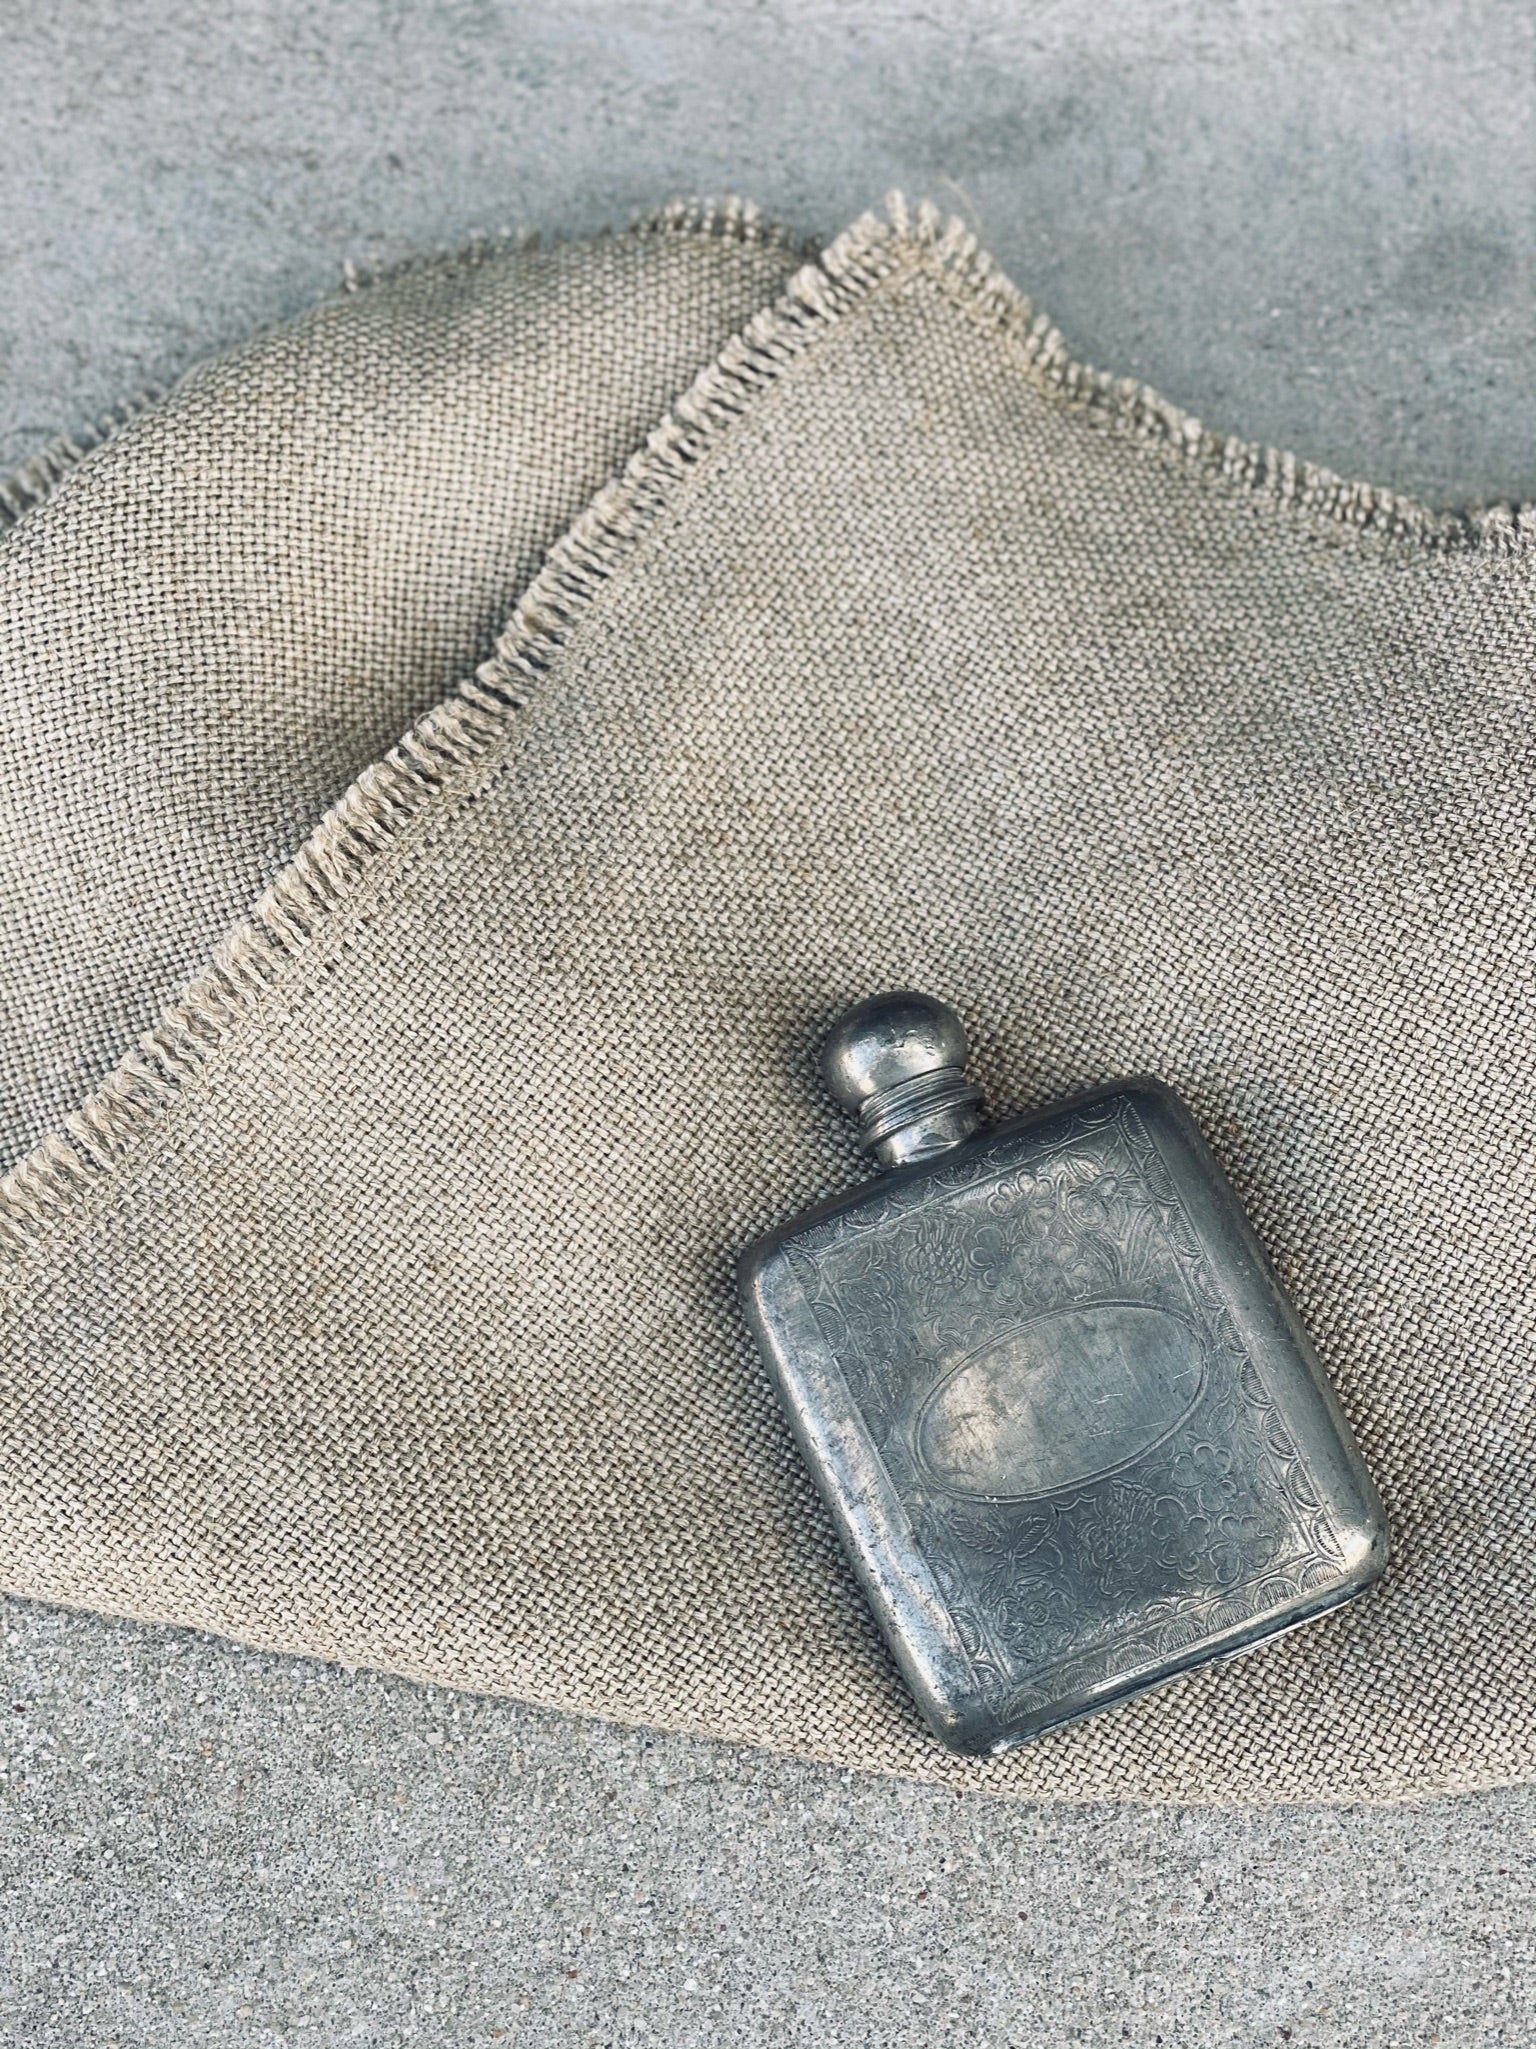 Vintage silver spirit flask